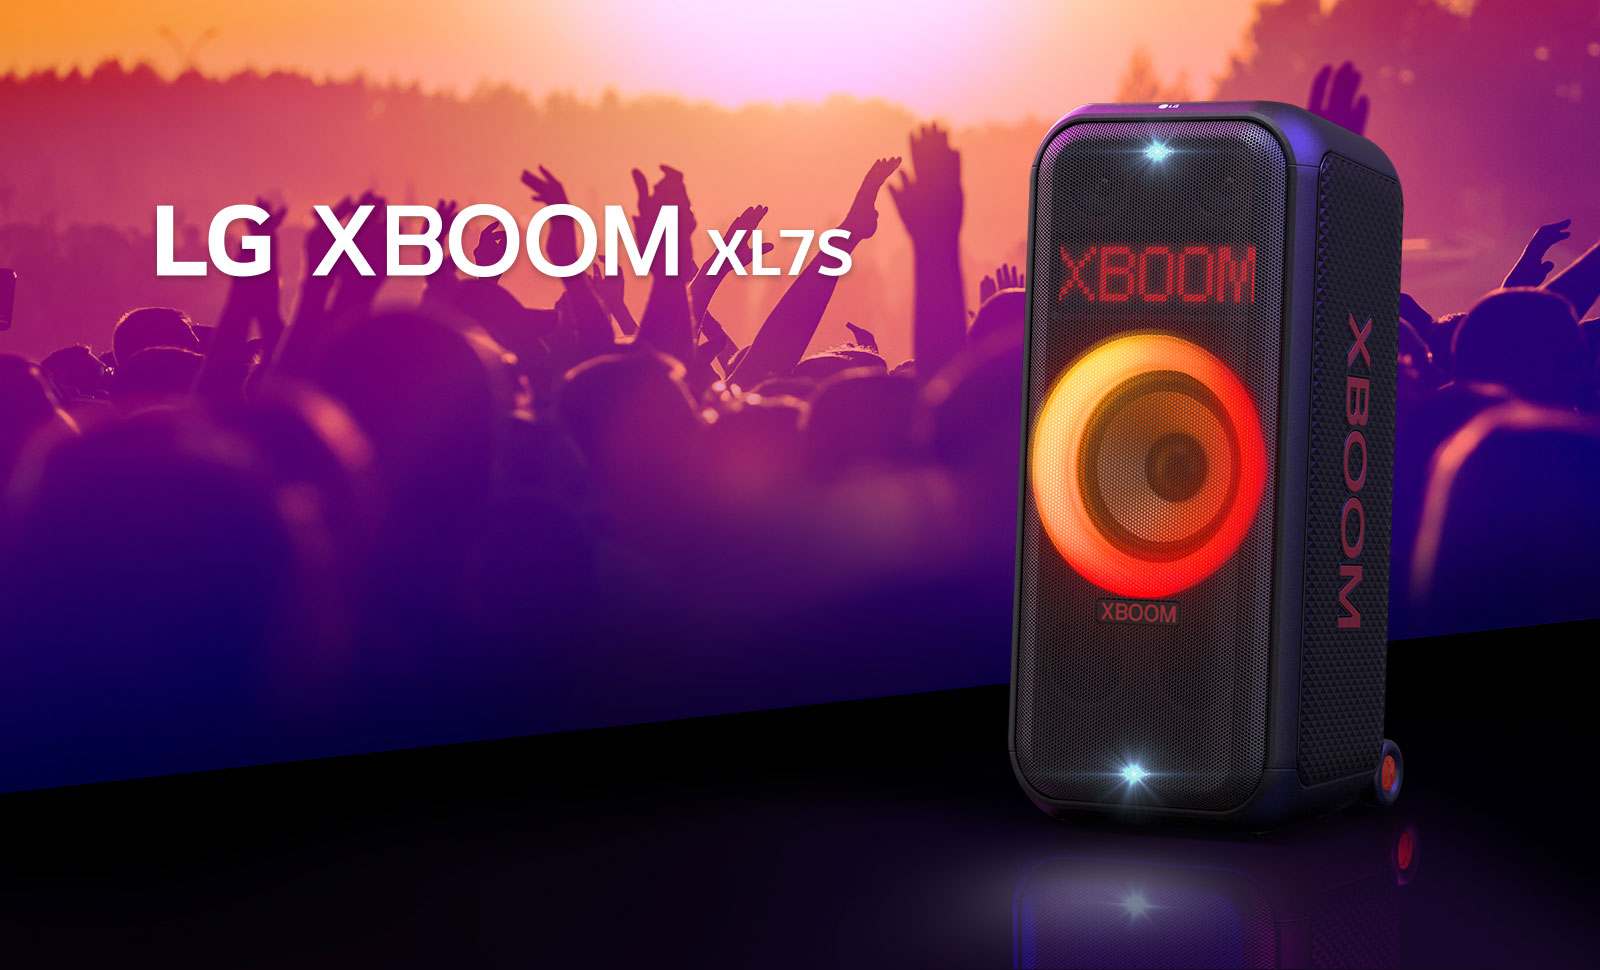 LG XBOOM XL5S padėtas ant scenos ir jame įjungtas raudonos bei oranžinės spalvų pereinantis apšvietimas. Už scenos žmonės mėgaujasi muzika.